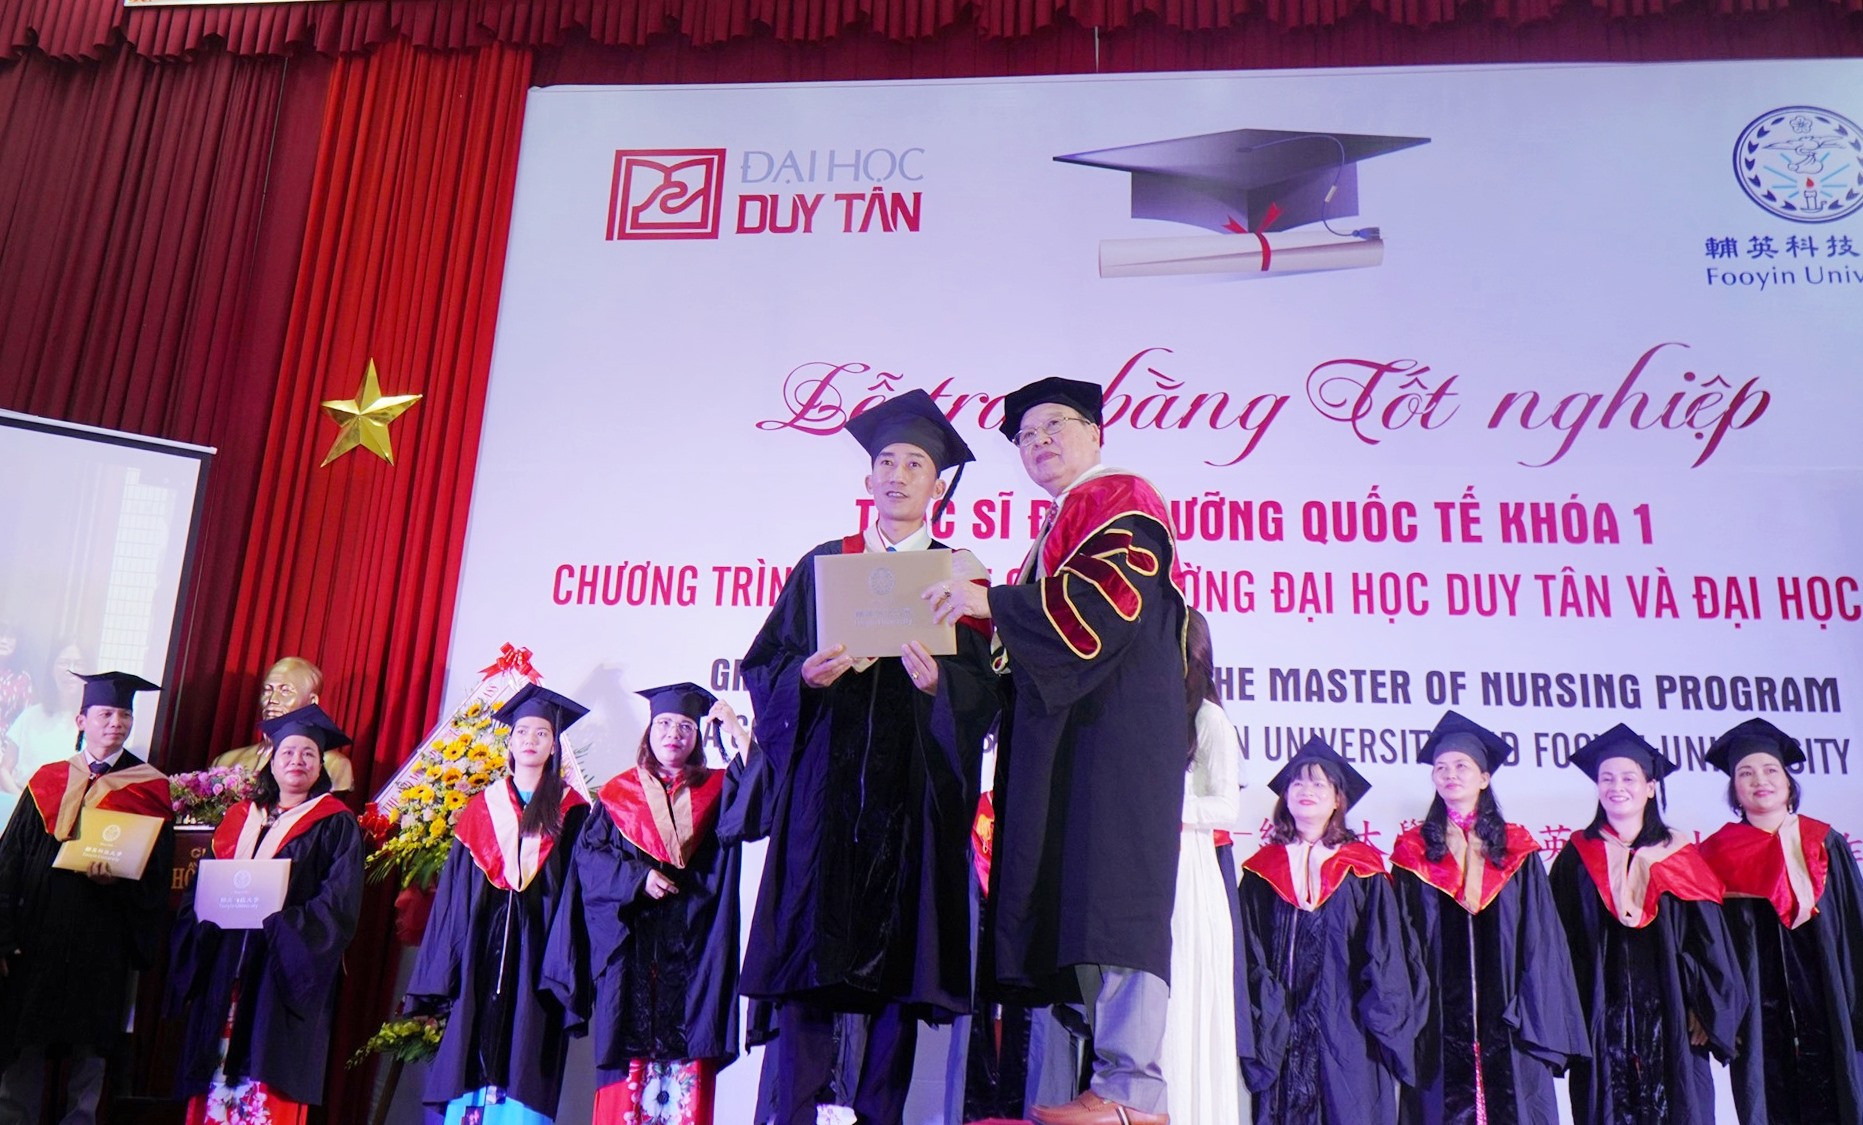 PGS.TS Nguyễn Ngọc Minh, Phó Hiệu trưởng DTU trao bằng tốt nghiệp cho ThS. Điều dưỡng Nguyễn Tiến Dũng. Ảnh NTB